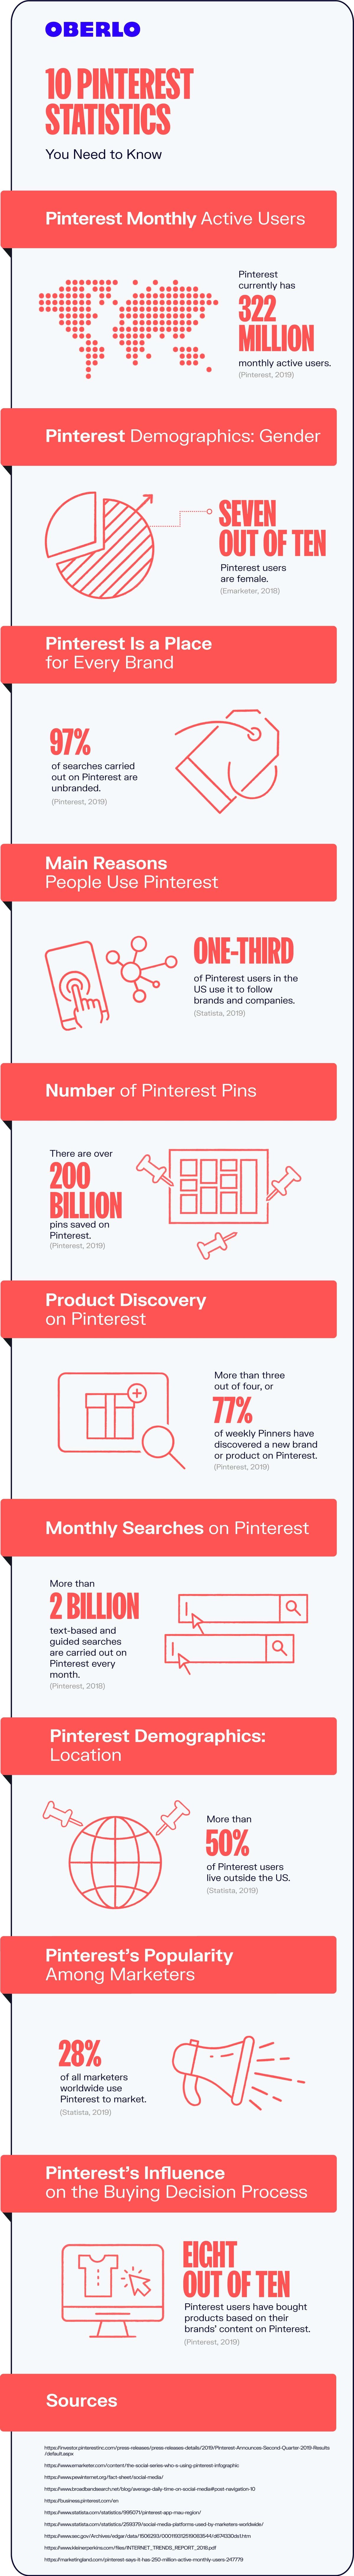 Estadístiques de Pinterest 2020